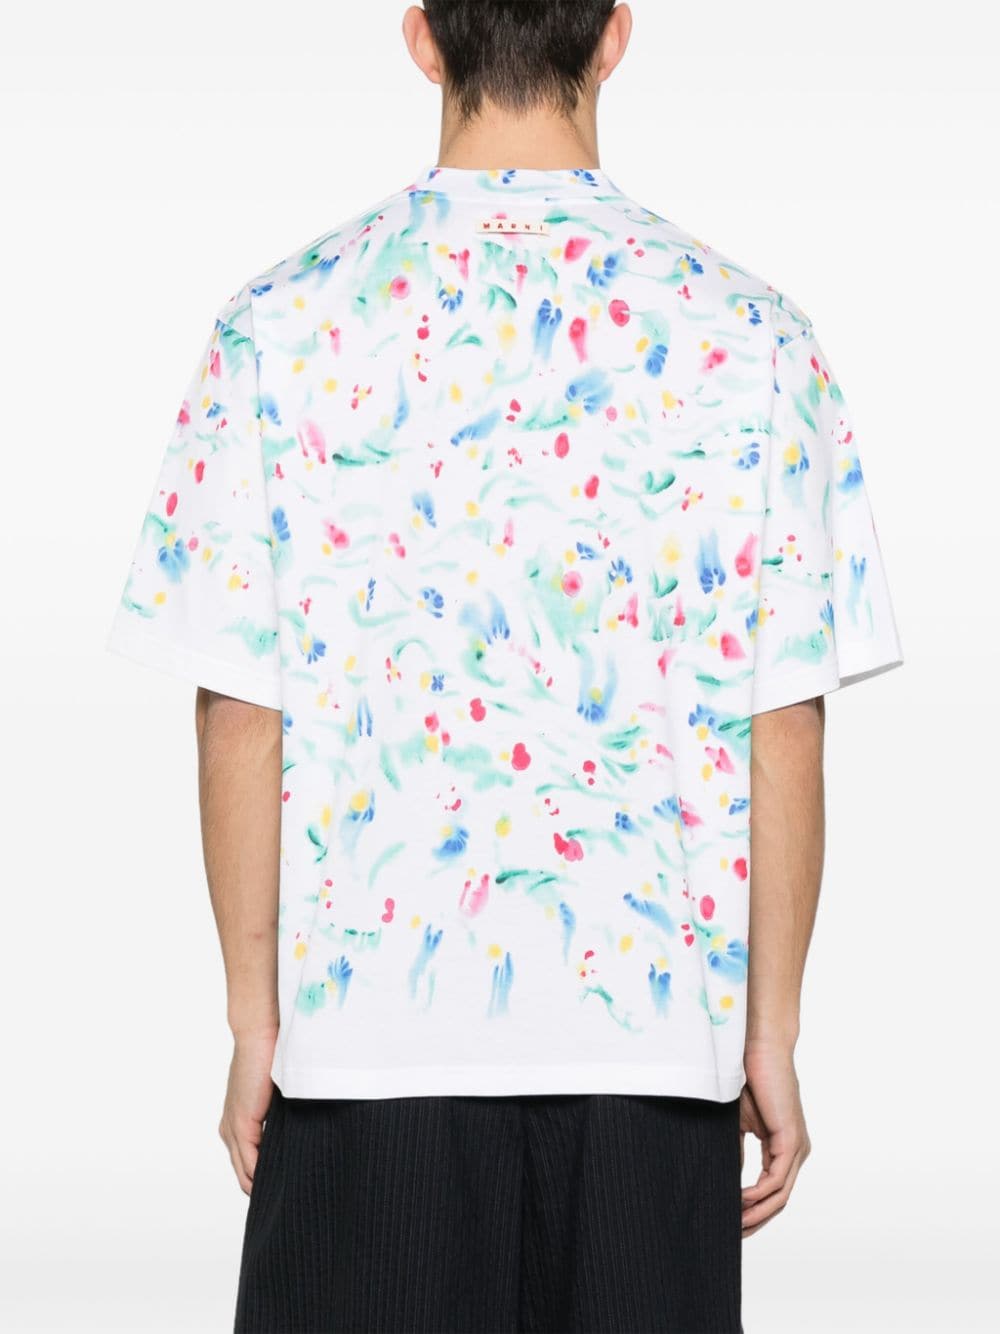 Paint-splatter cotton T-shirt<BR/><BR/><BR/>